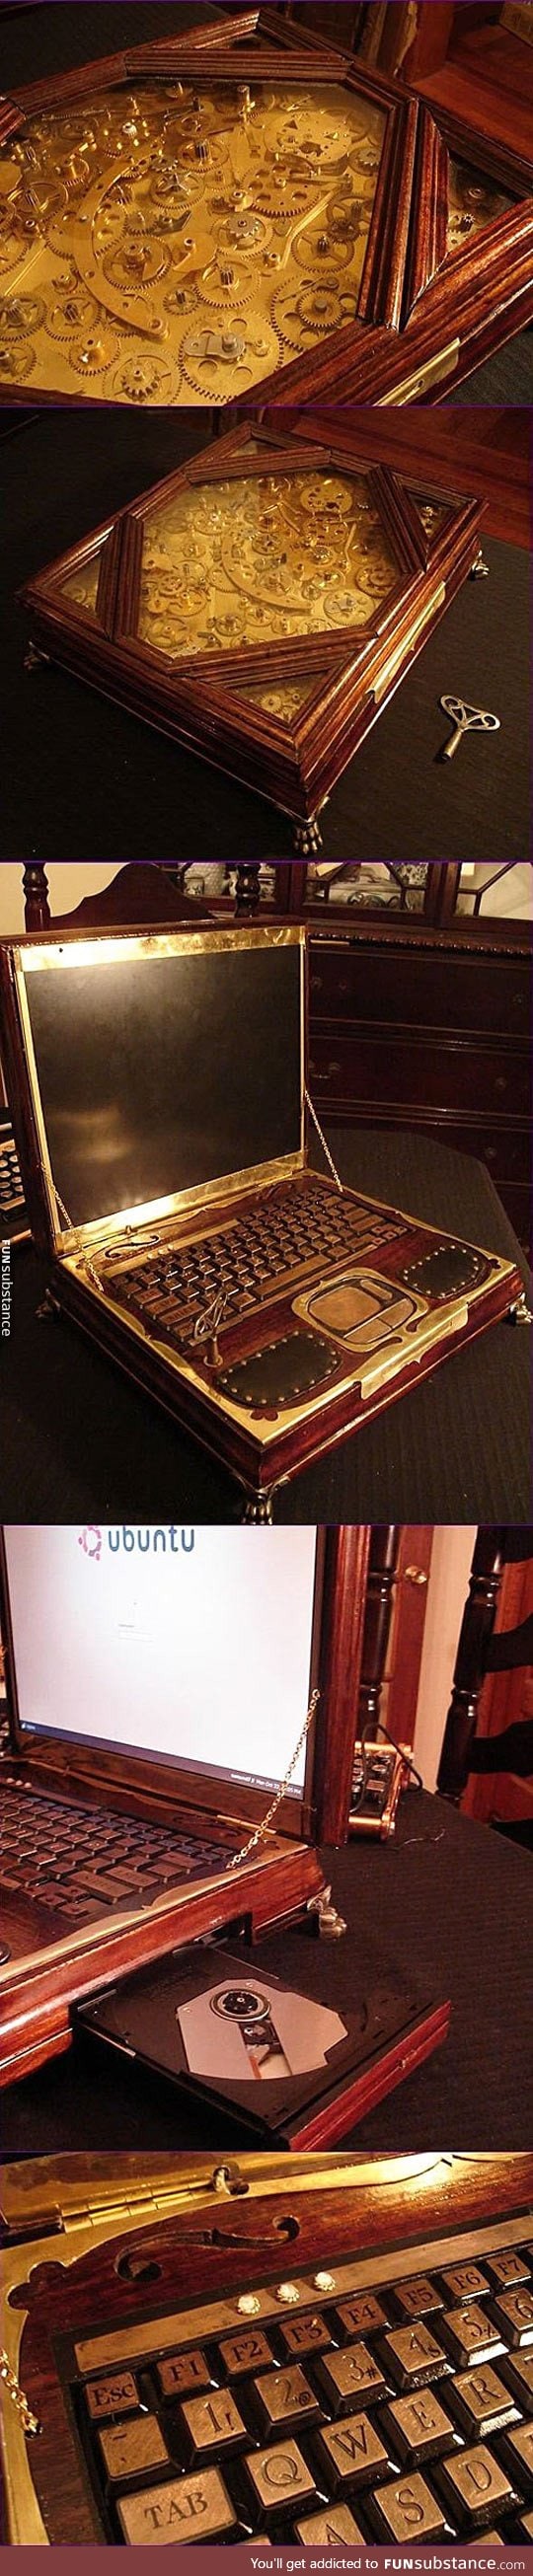 Gorgeous steampunk laptop